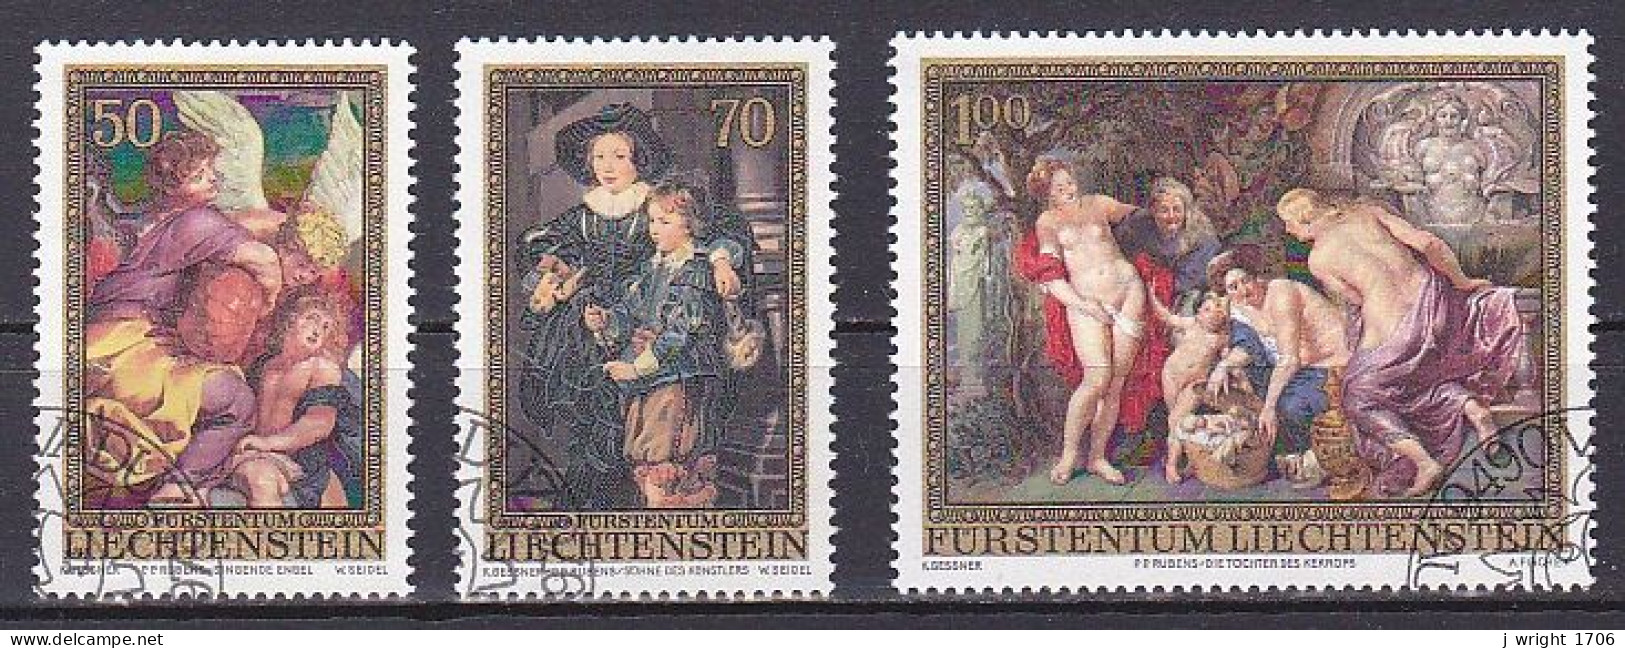 Liechtenstein, 1976, Peter Paul Rubens, Set, CTO - Oblitérés